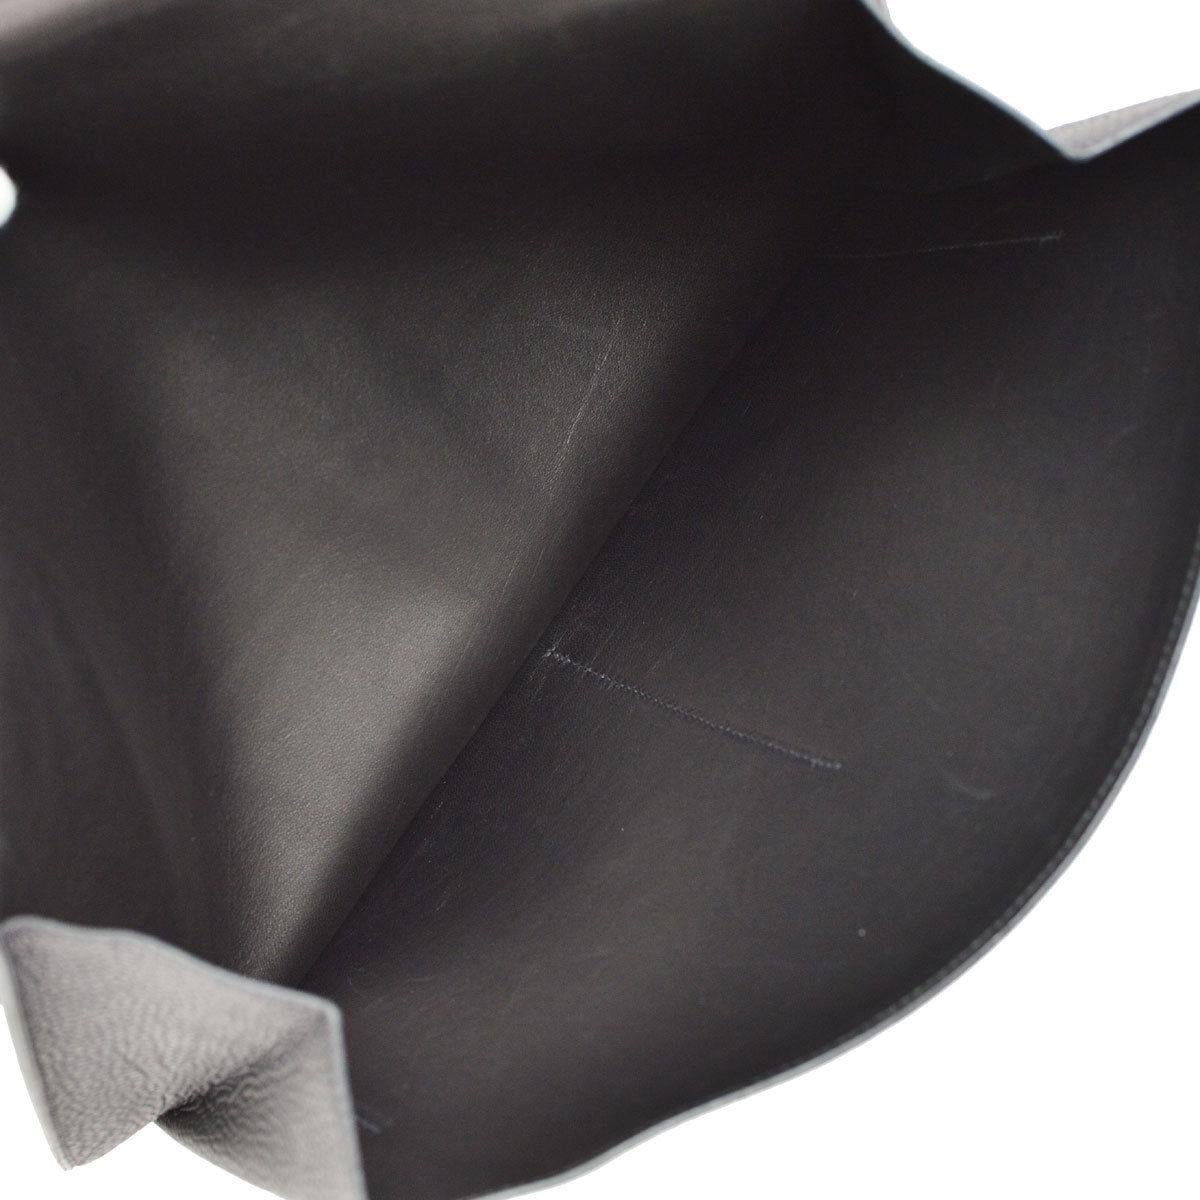  Hermes Black Leather Silver Large LapTop Business Envelope Clutch CarryAll Bag 1